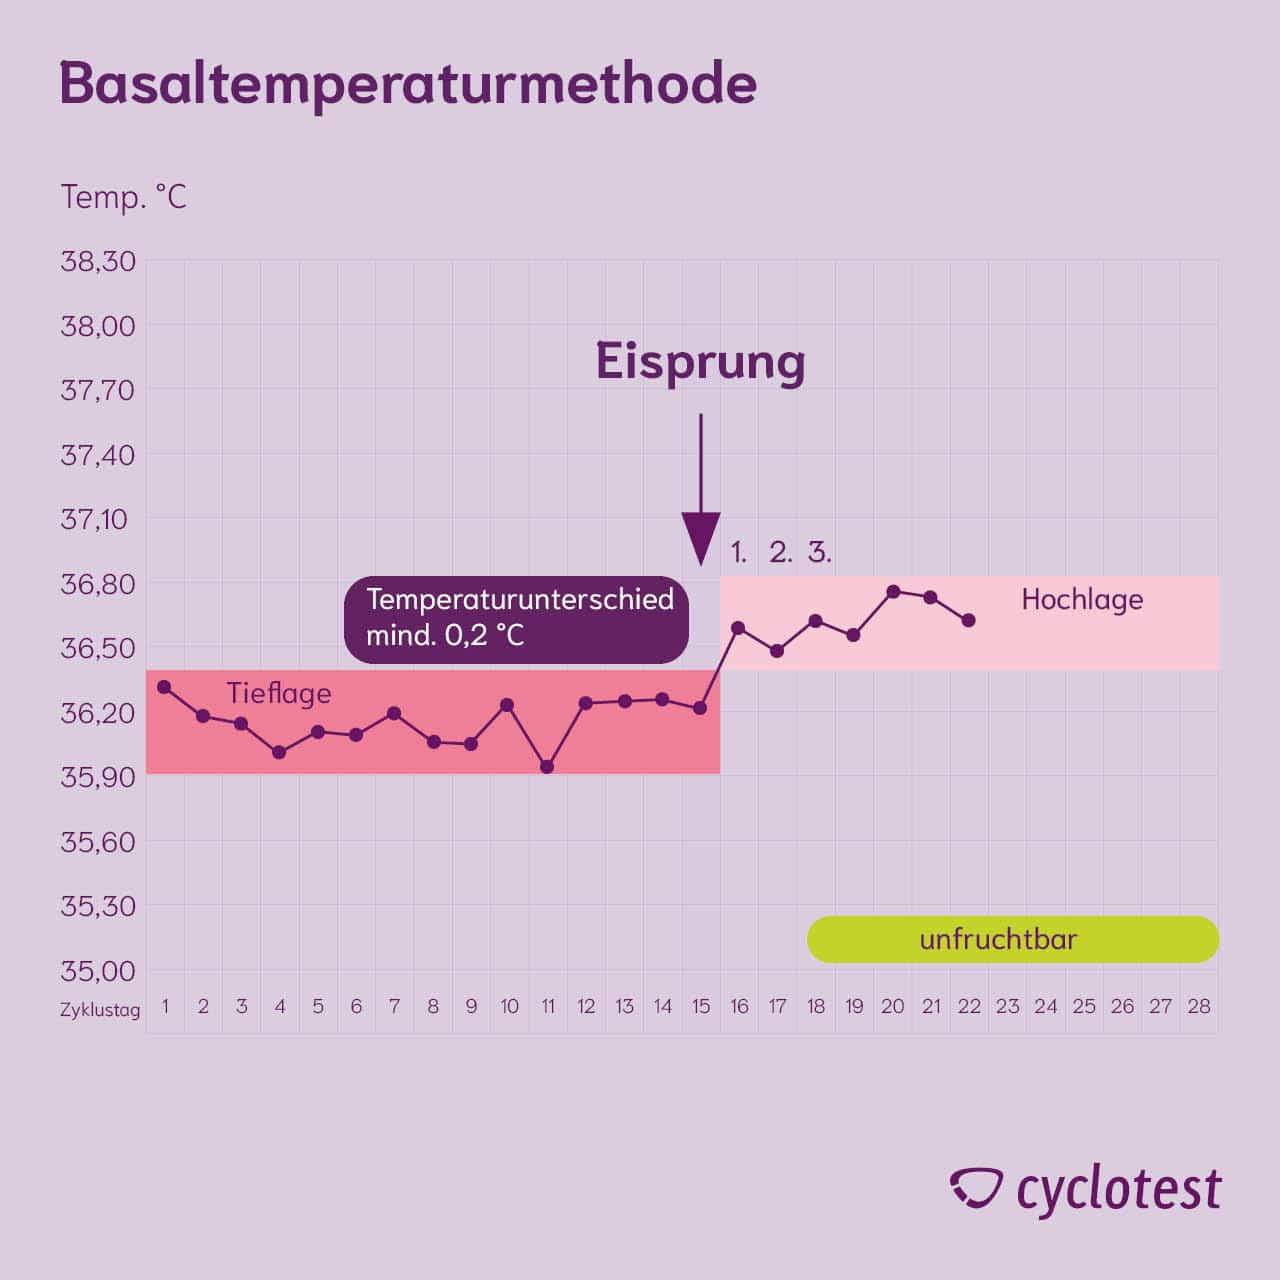 Temperaturmethode: Veränderung der Basaltemperatur nutzen